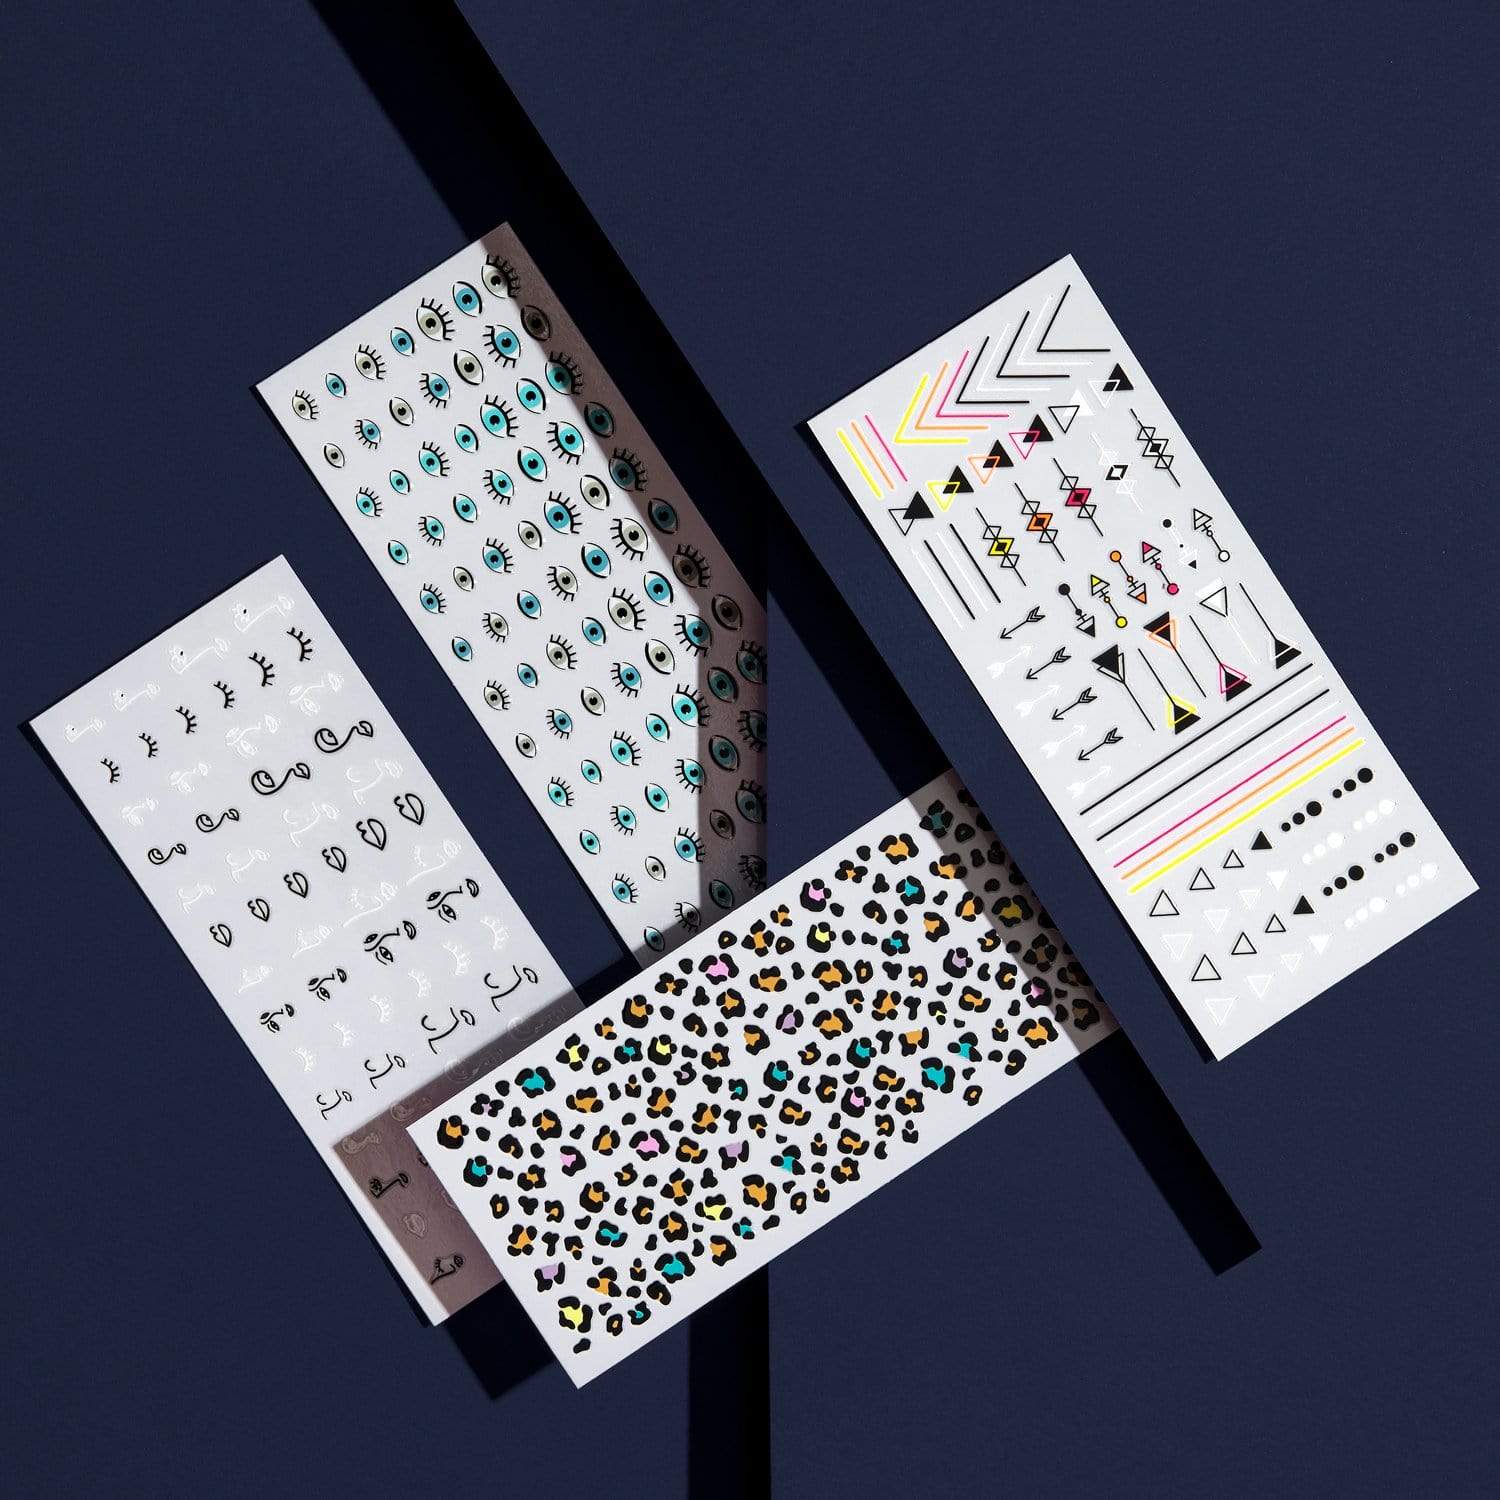 Ciaté London - Cheat Sheets Nail Wrap Kit - Tie Dye